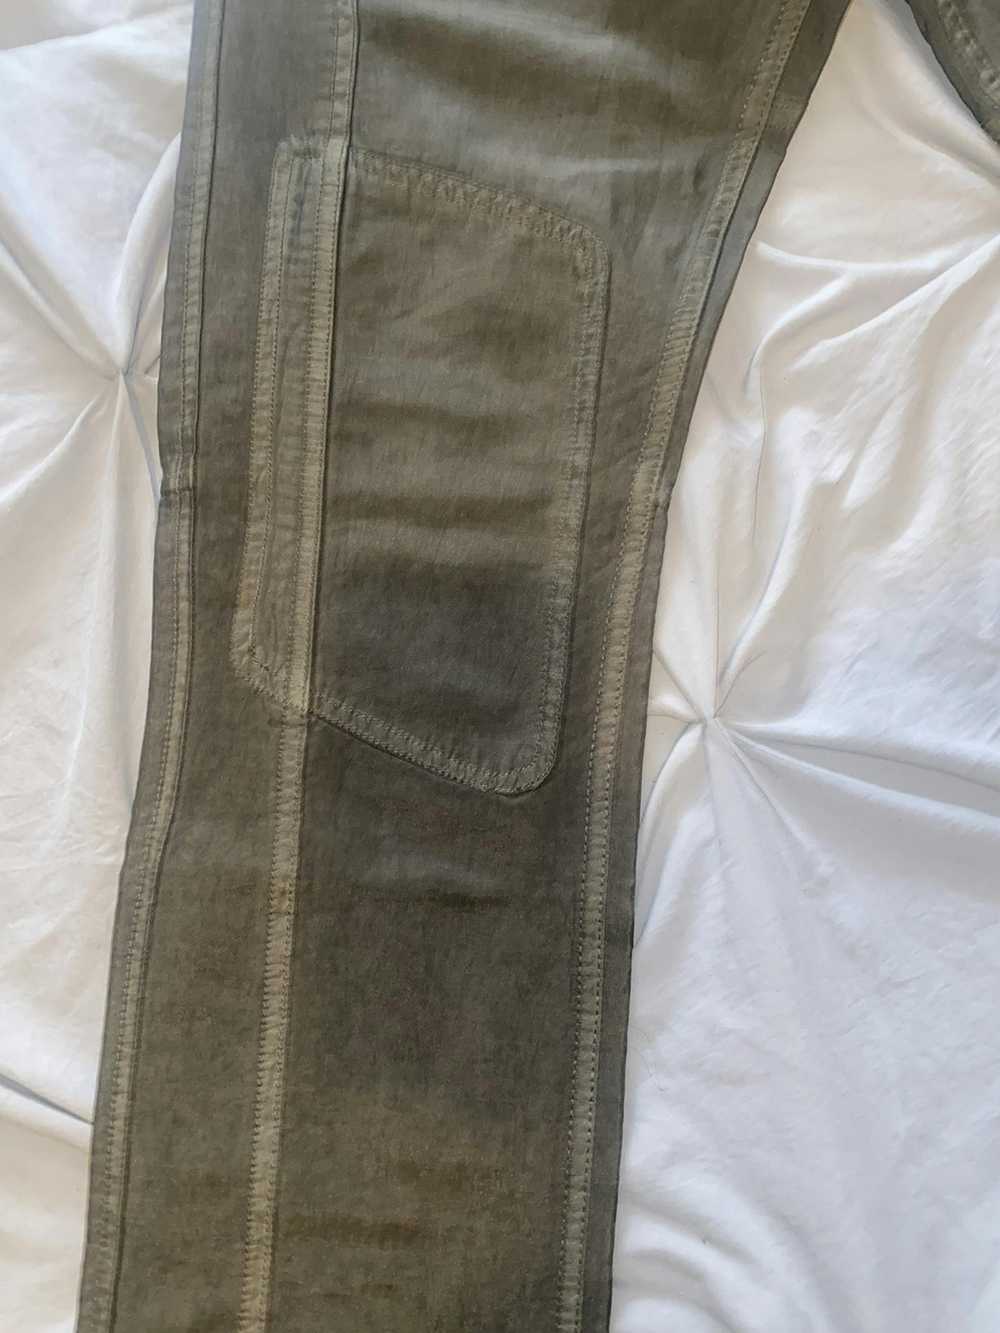 Diesel Vintage Diesel lightweight jeans pants - image 2